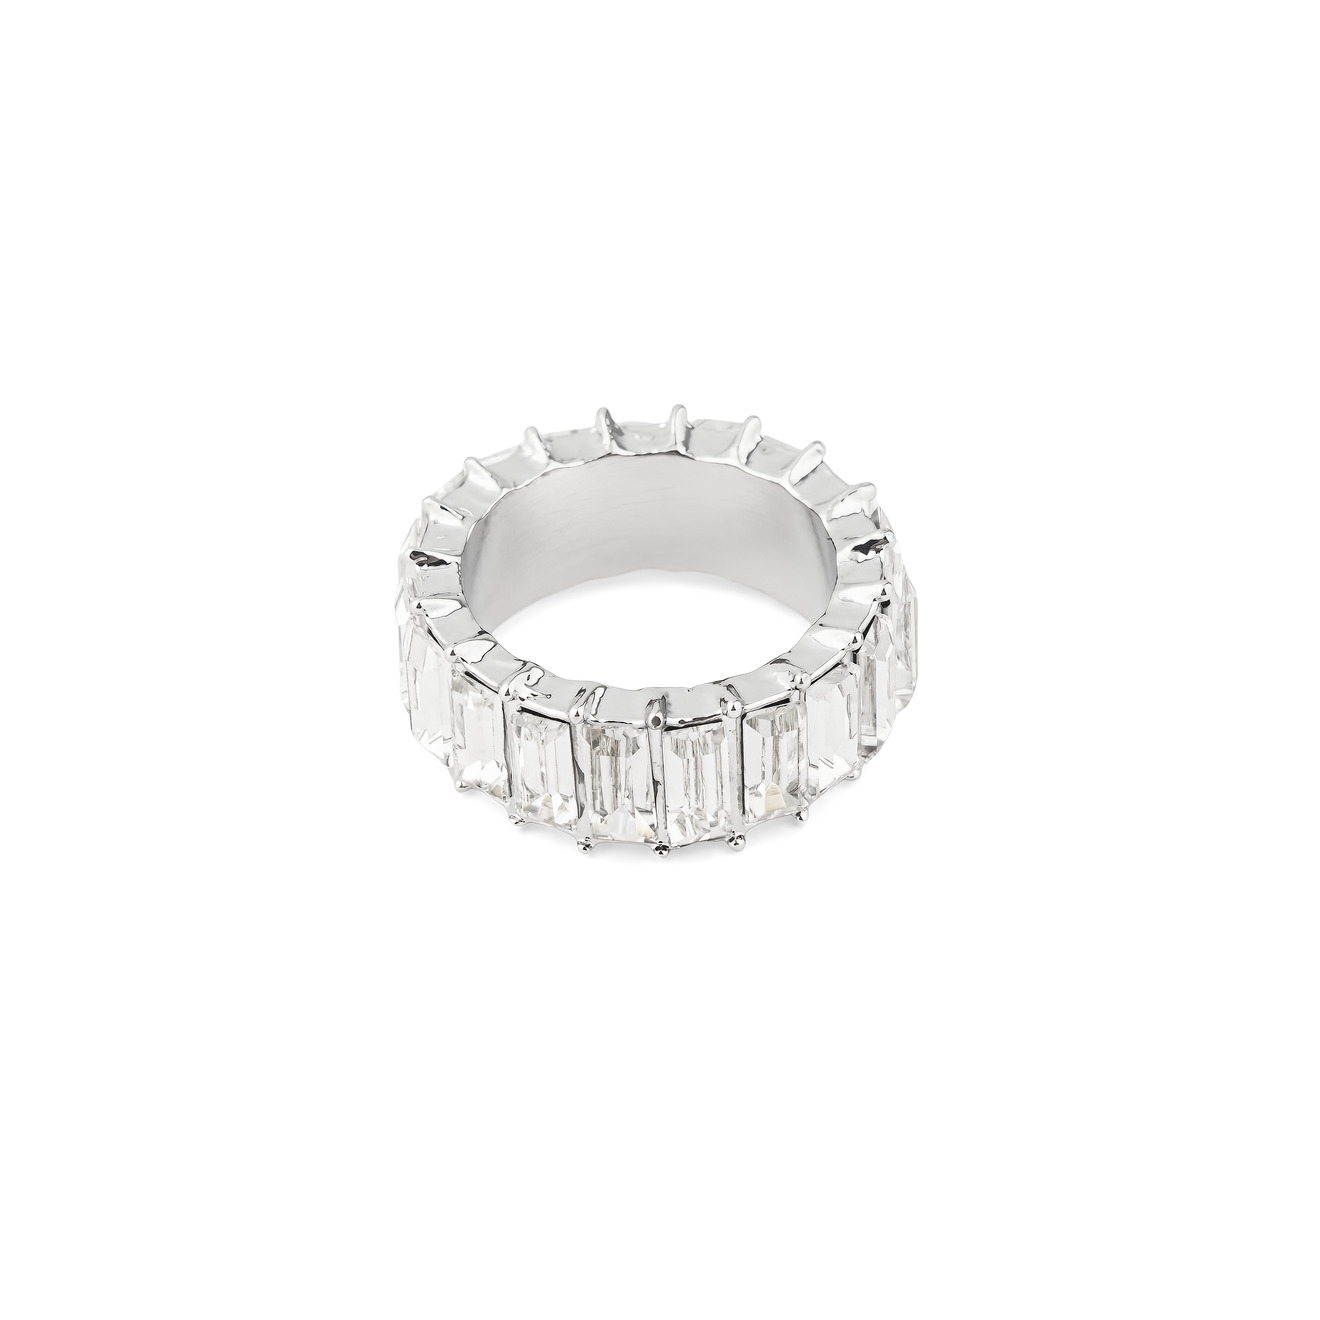 Herald Percy Серебристое кольцо с белыми кристаллами herald percy серебристое колье с крупными круглыми кристаллами и подвеской грушей